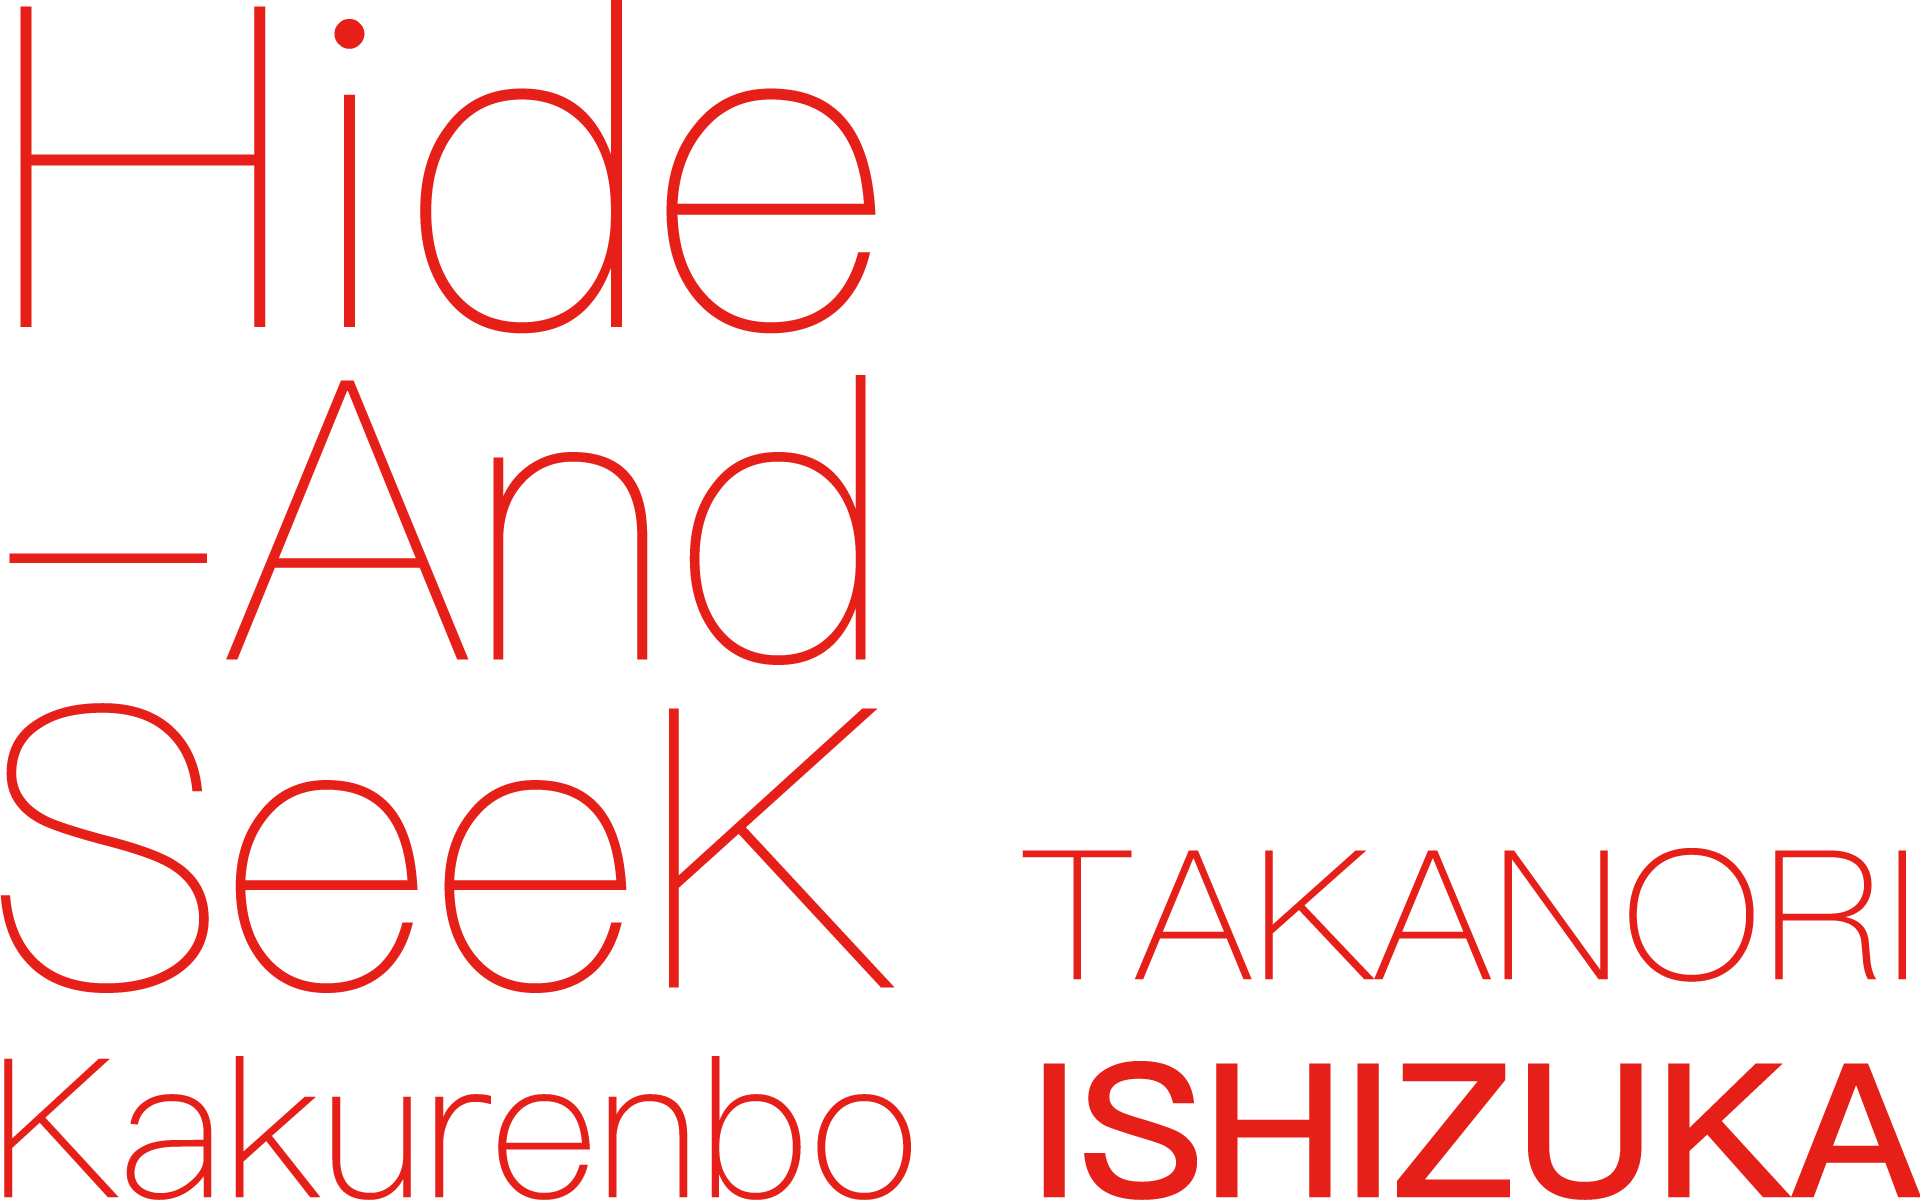 "Hide And Seek Kakurenbo" 石塚隆則展